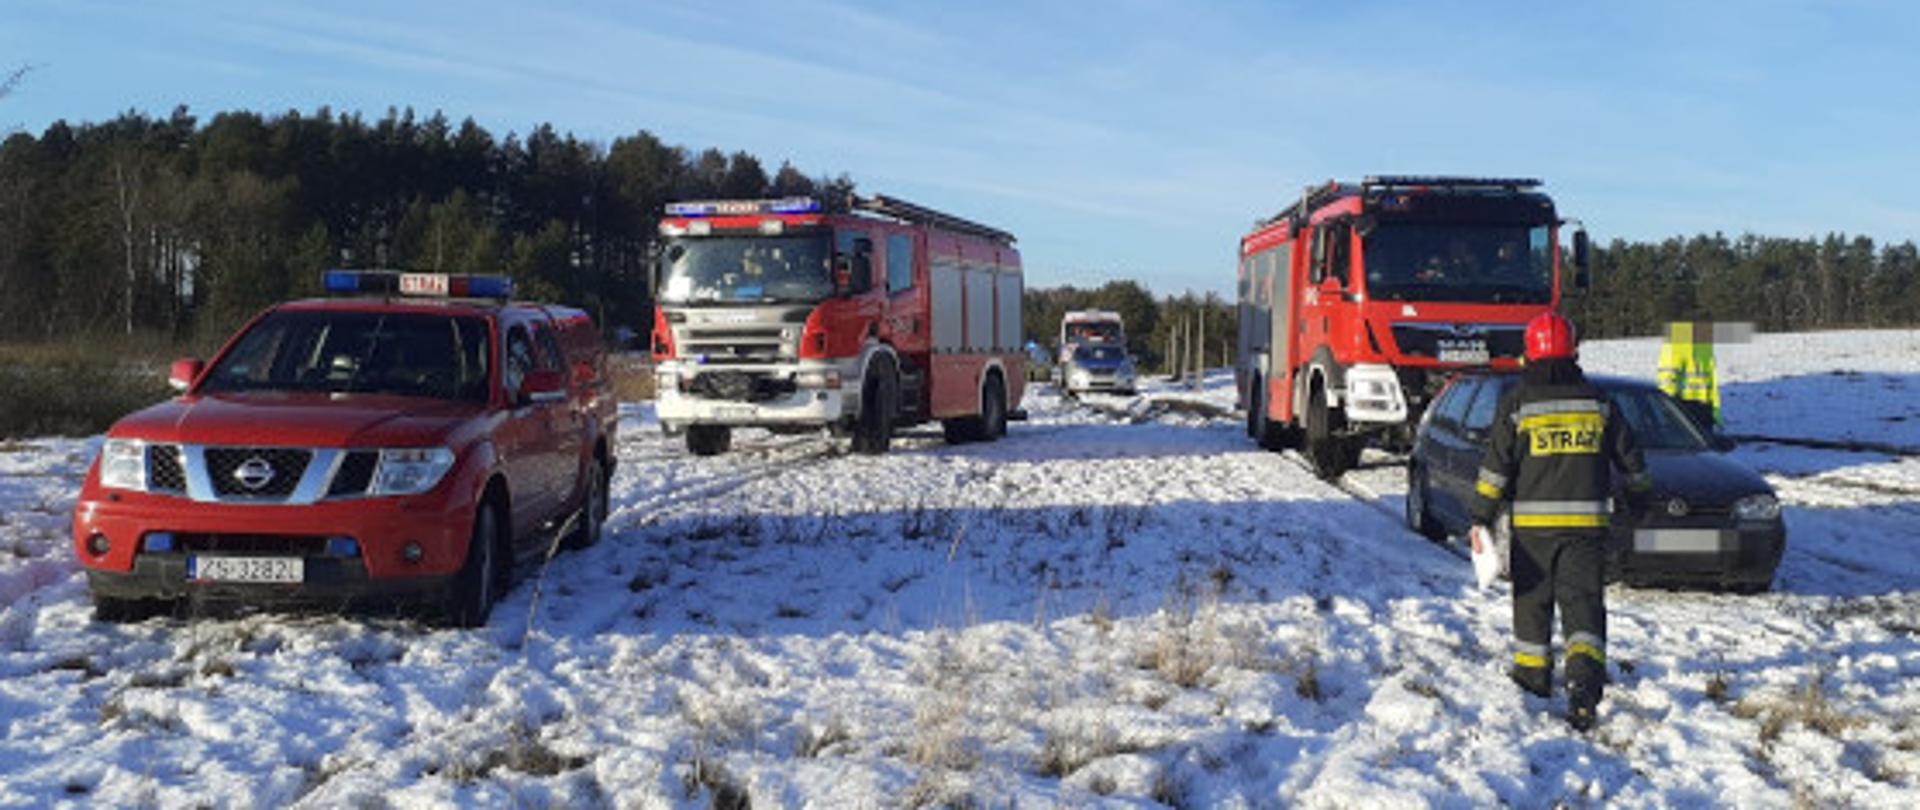 Zdjęcie pojazdów ratowniczych ze zdarzenia "załamanie się lodu pod wędkarzem"